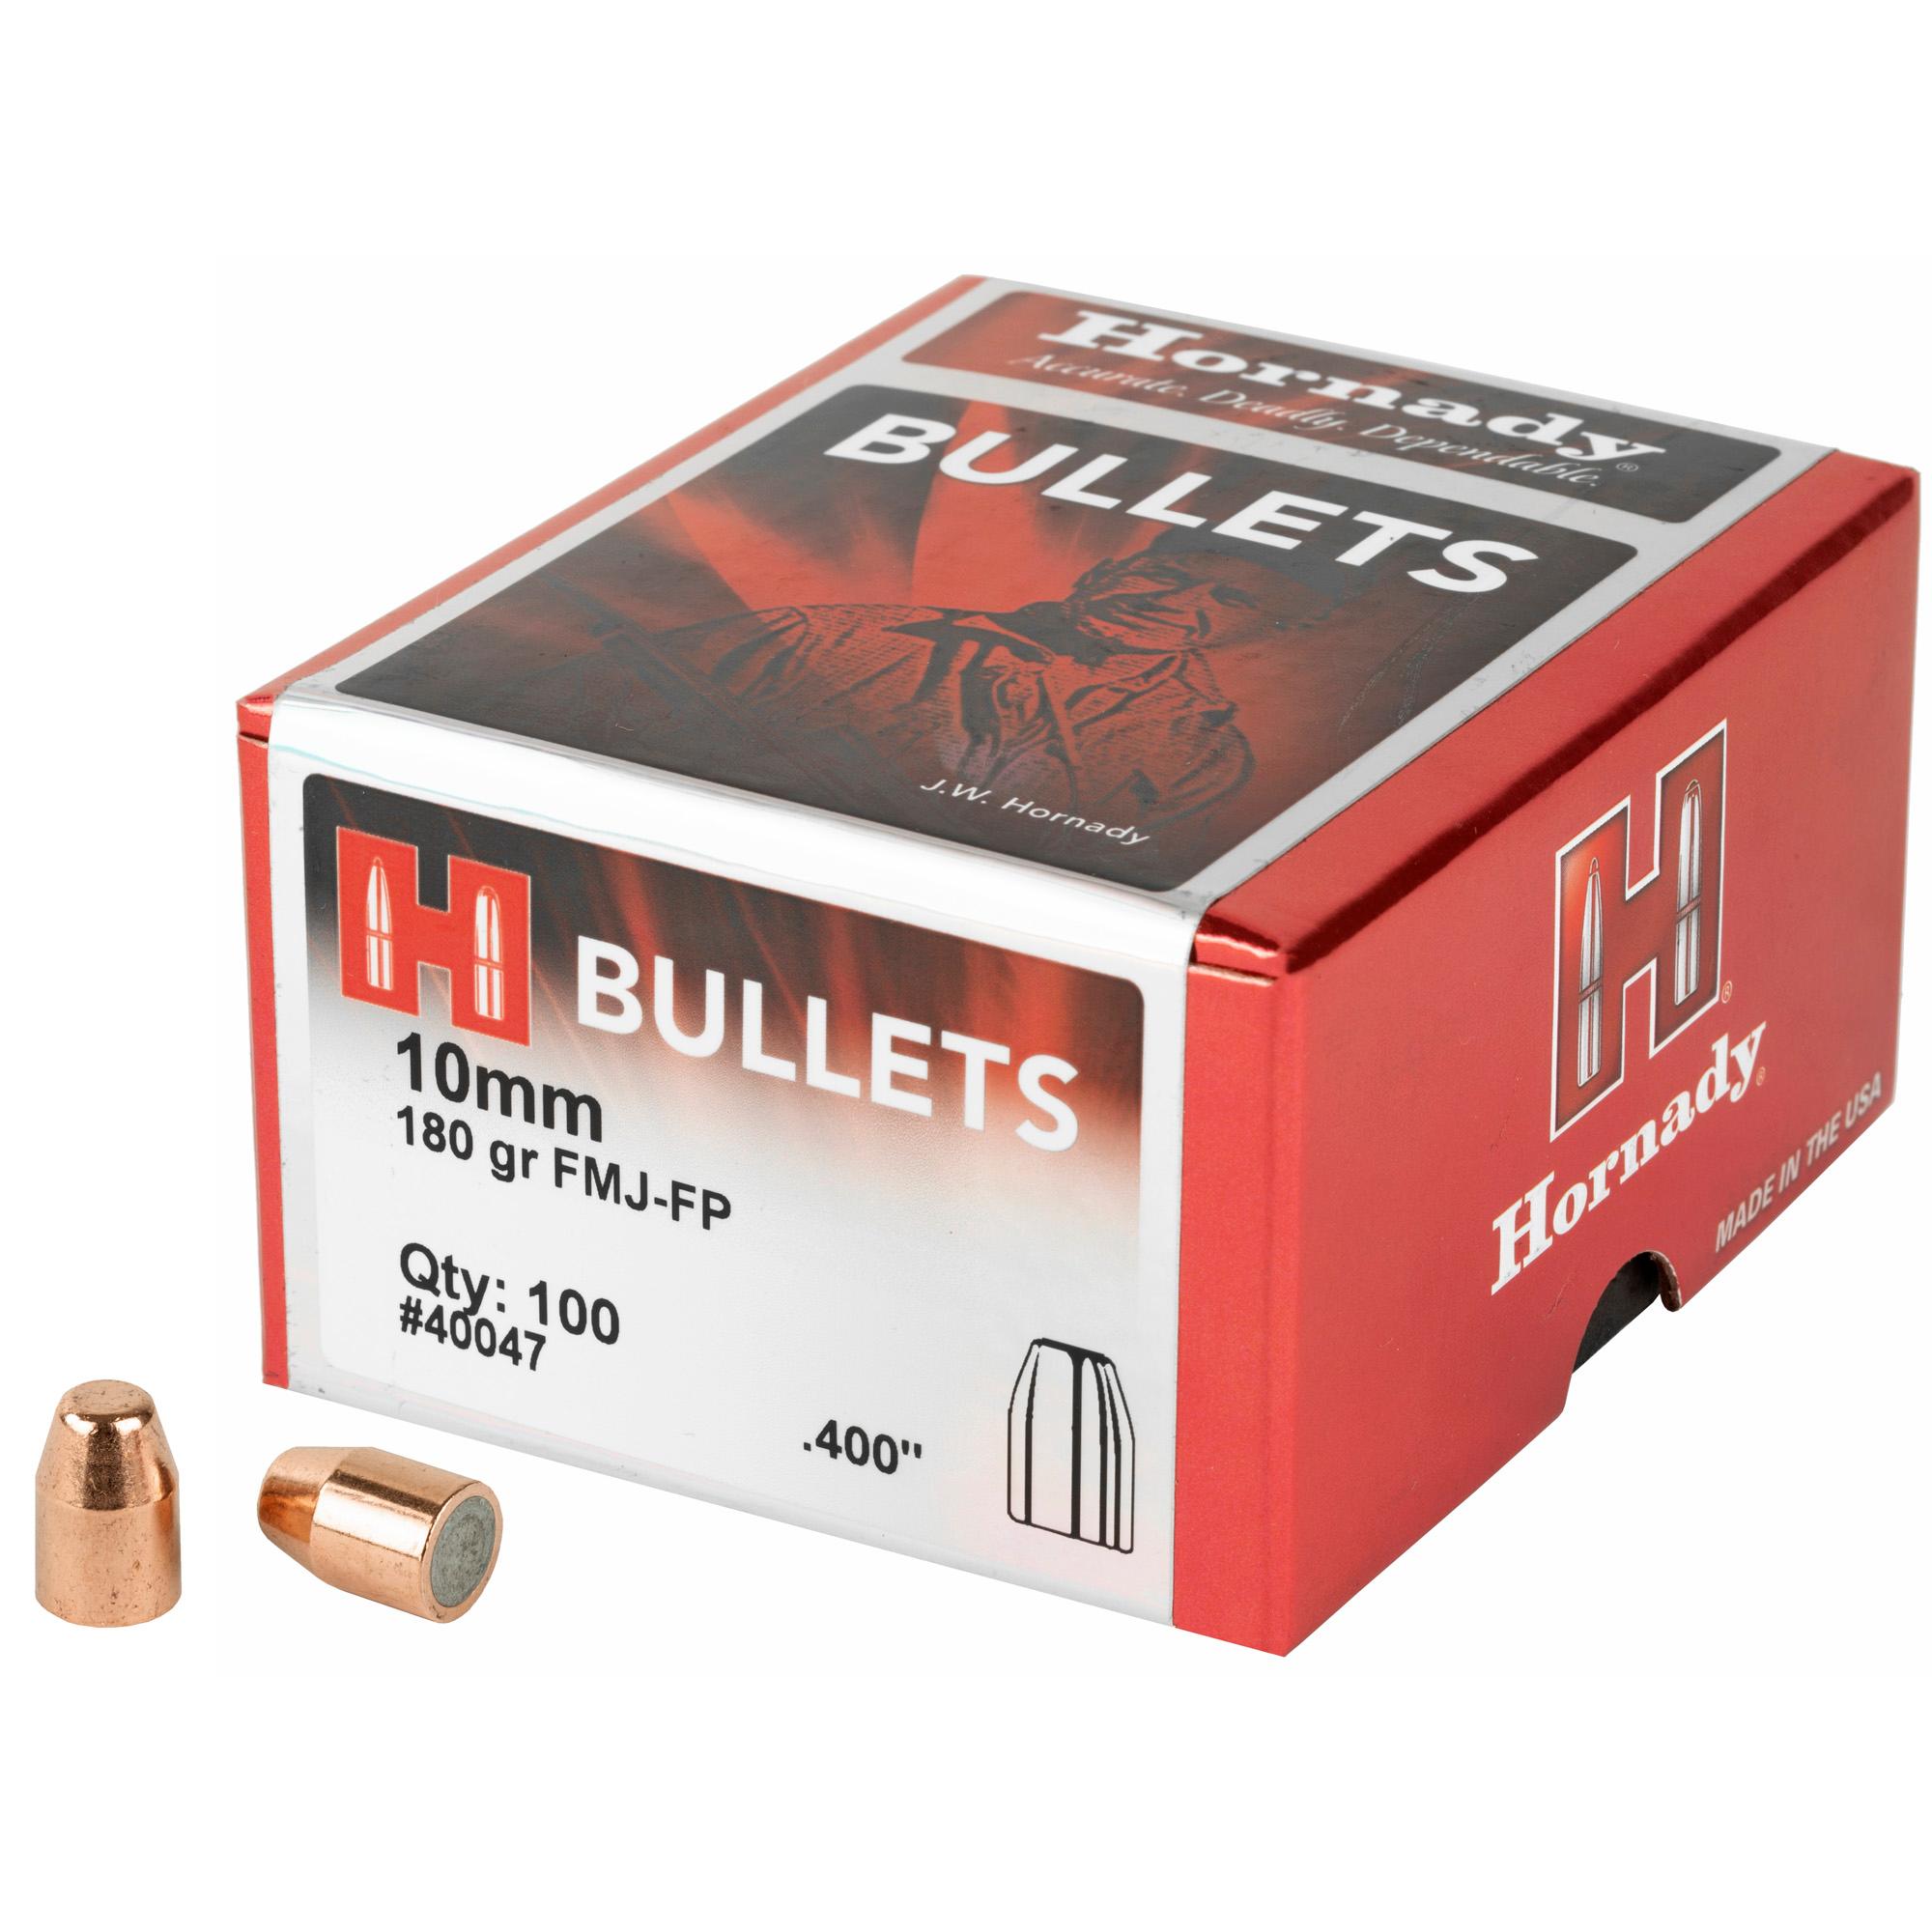 Bullets HRNDY FMJ-FP 10MM .400 180GR 100CT image 1